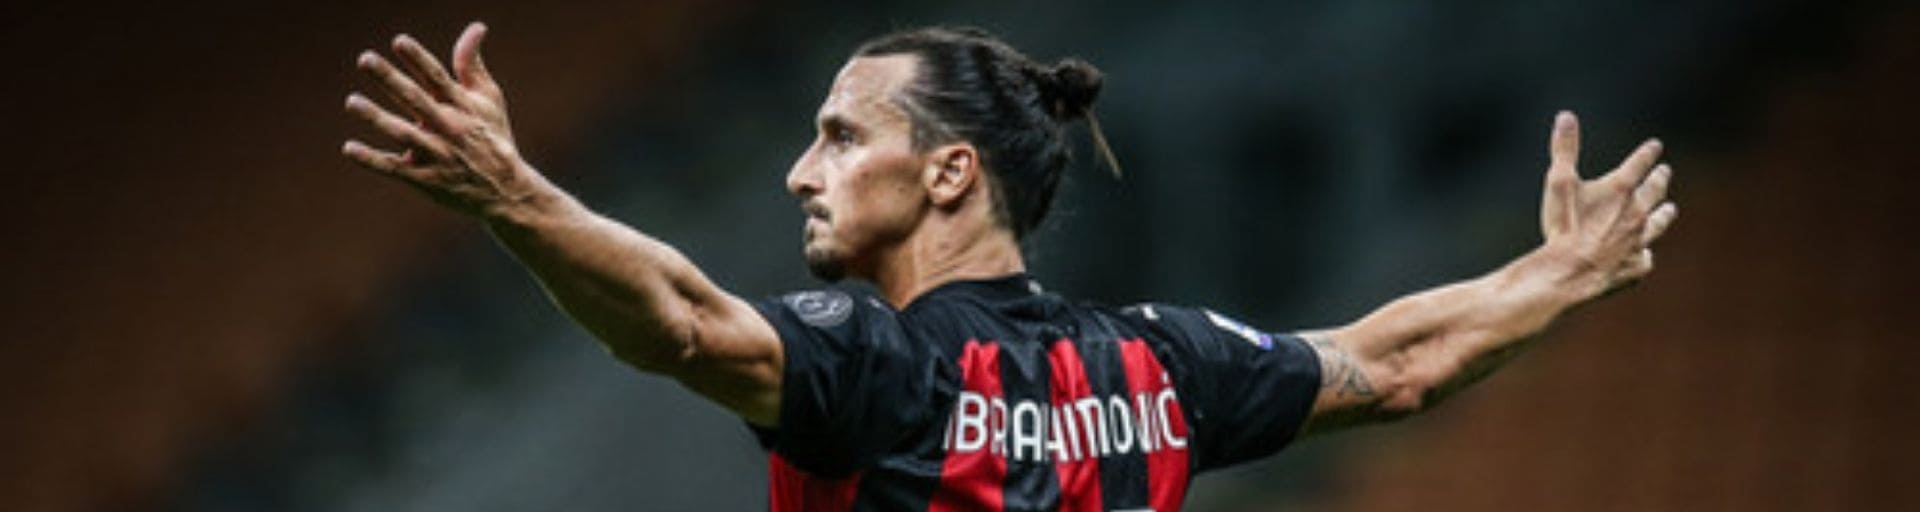 После матча с Наполи Златан Ибрагимович вошел в историю Милана